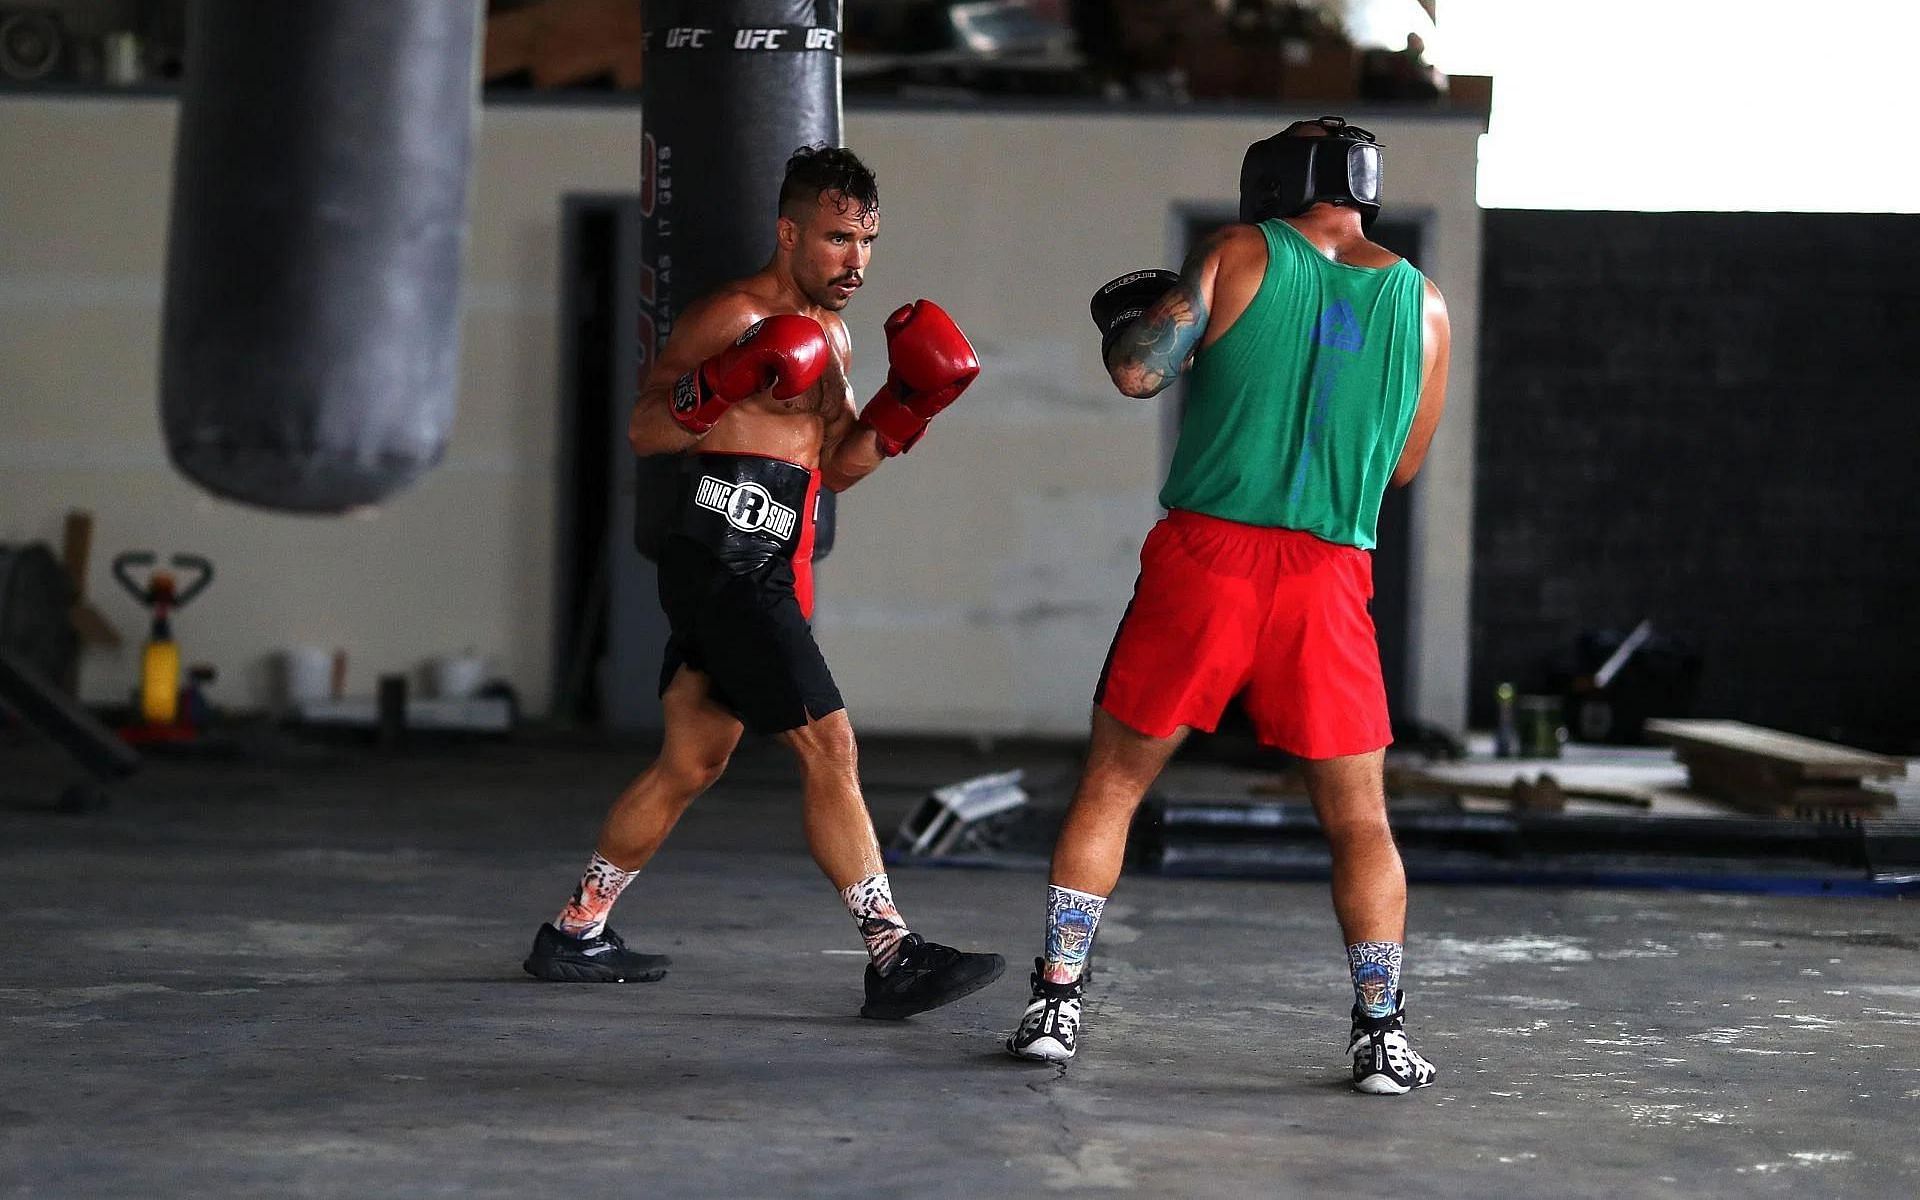 Amateur Boxers Train during Coronavirus Pandemic